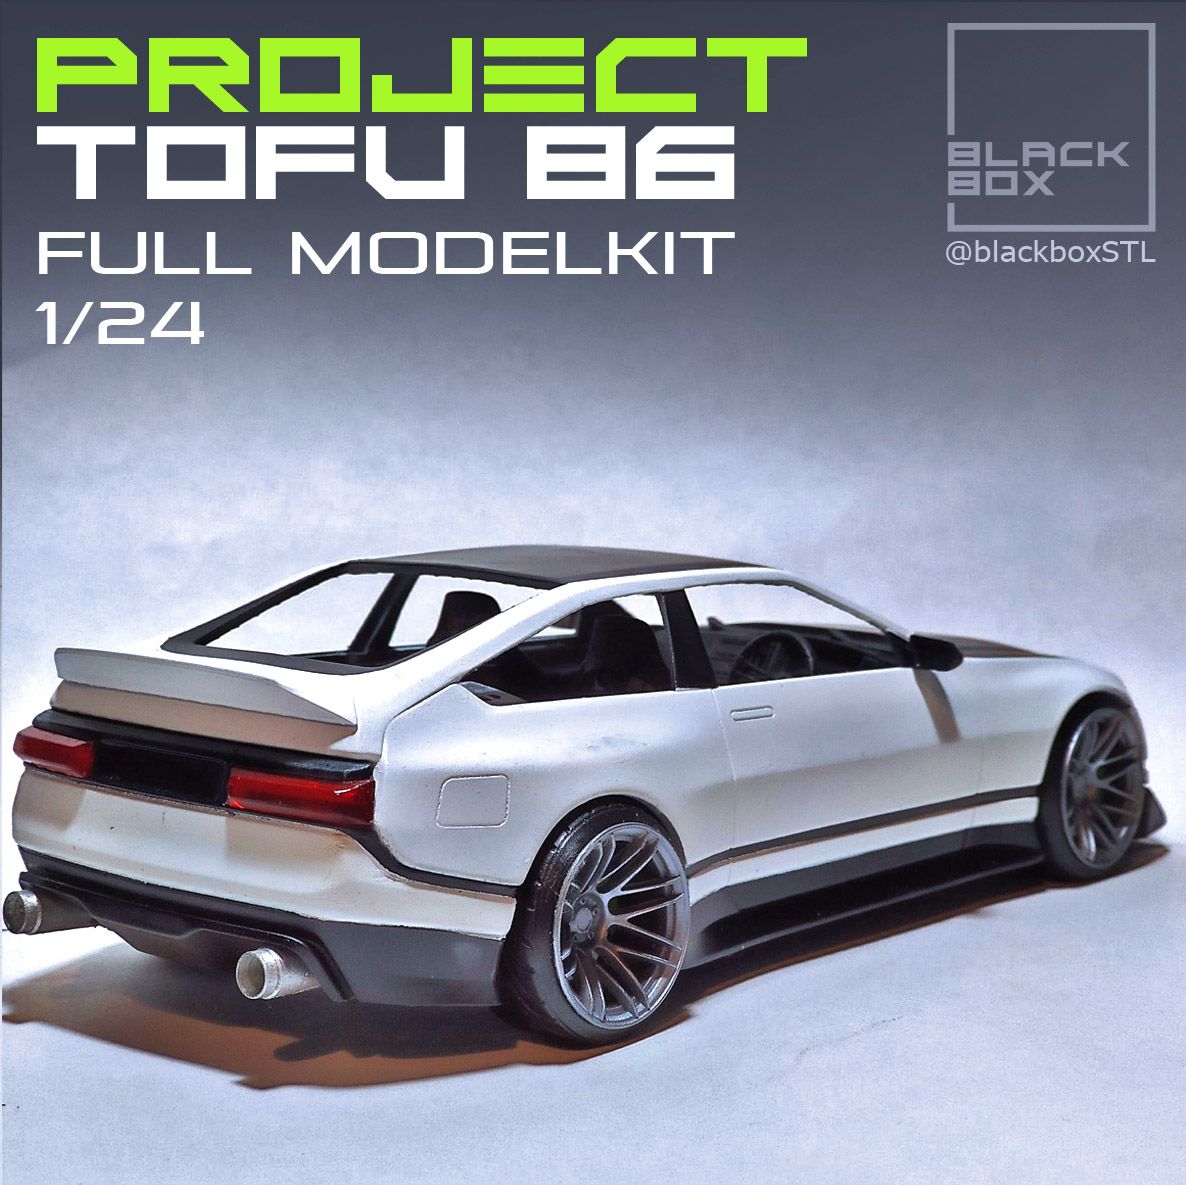 a0b.jpg Télécharger fichier Projet Tofu 1/24 MODELKIT COMPLET • Plan pour imprimante 3D, BlackBox